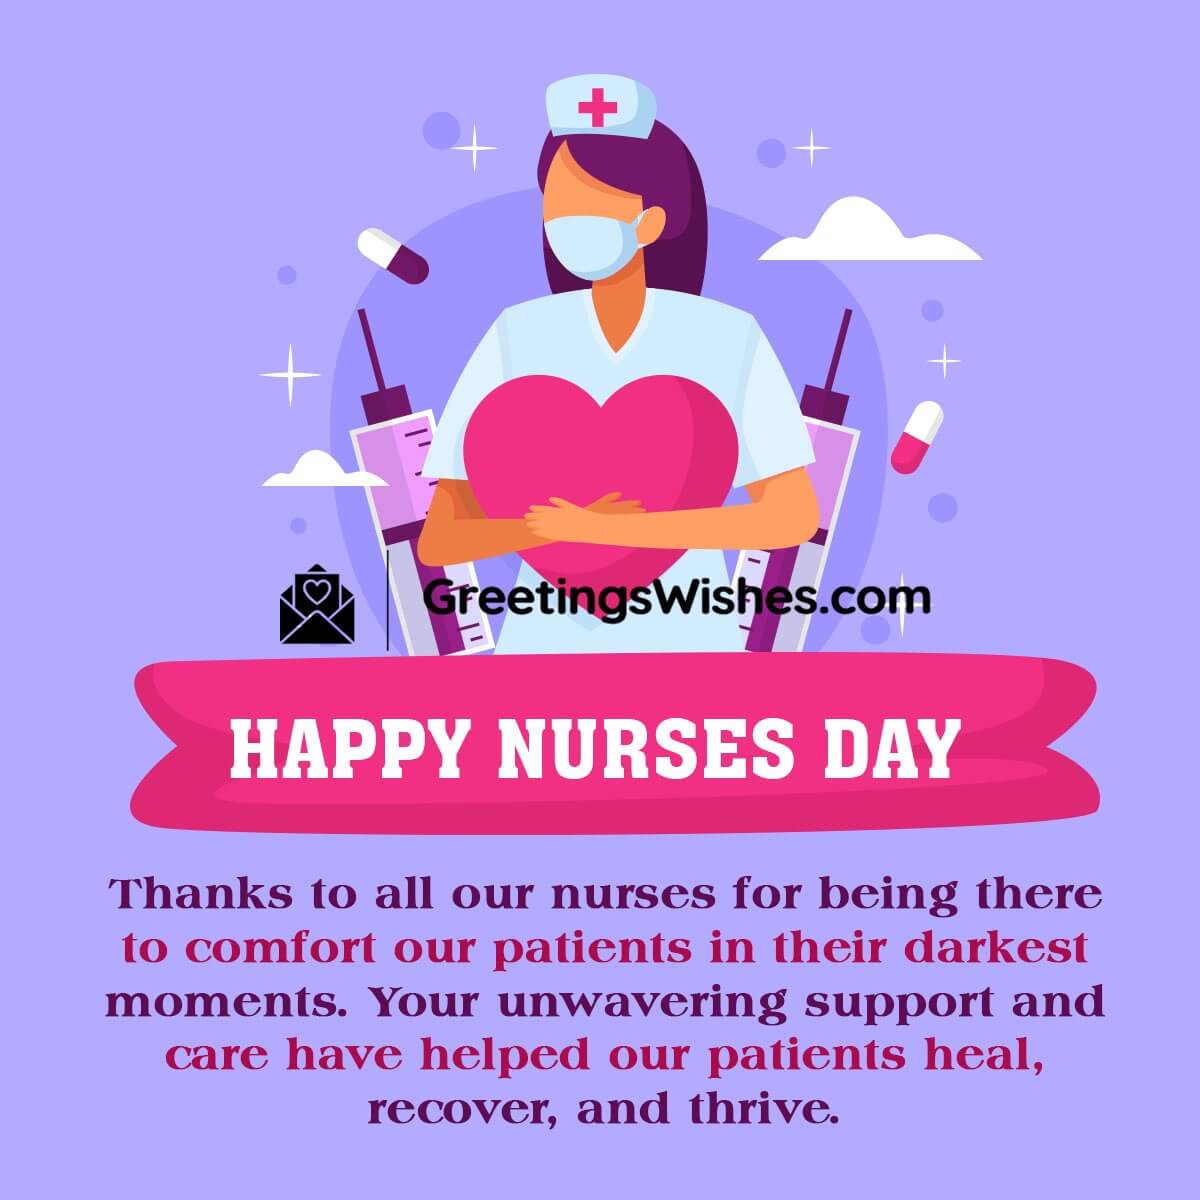 Happy Nurses Day Message